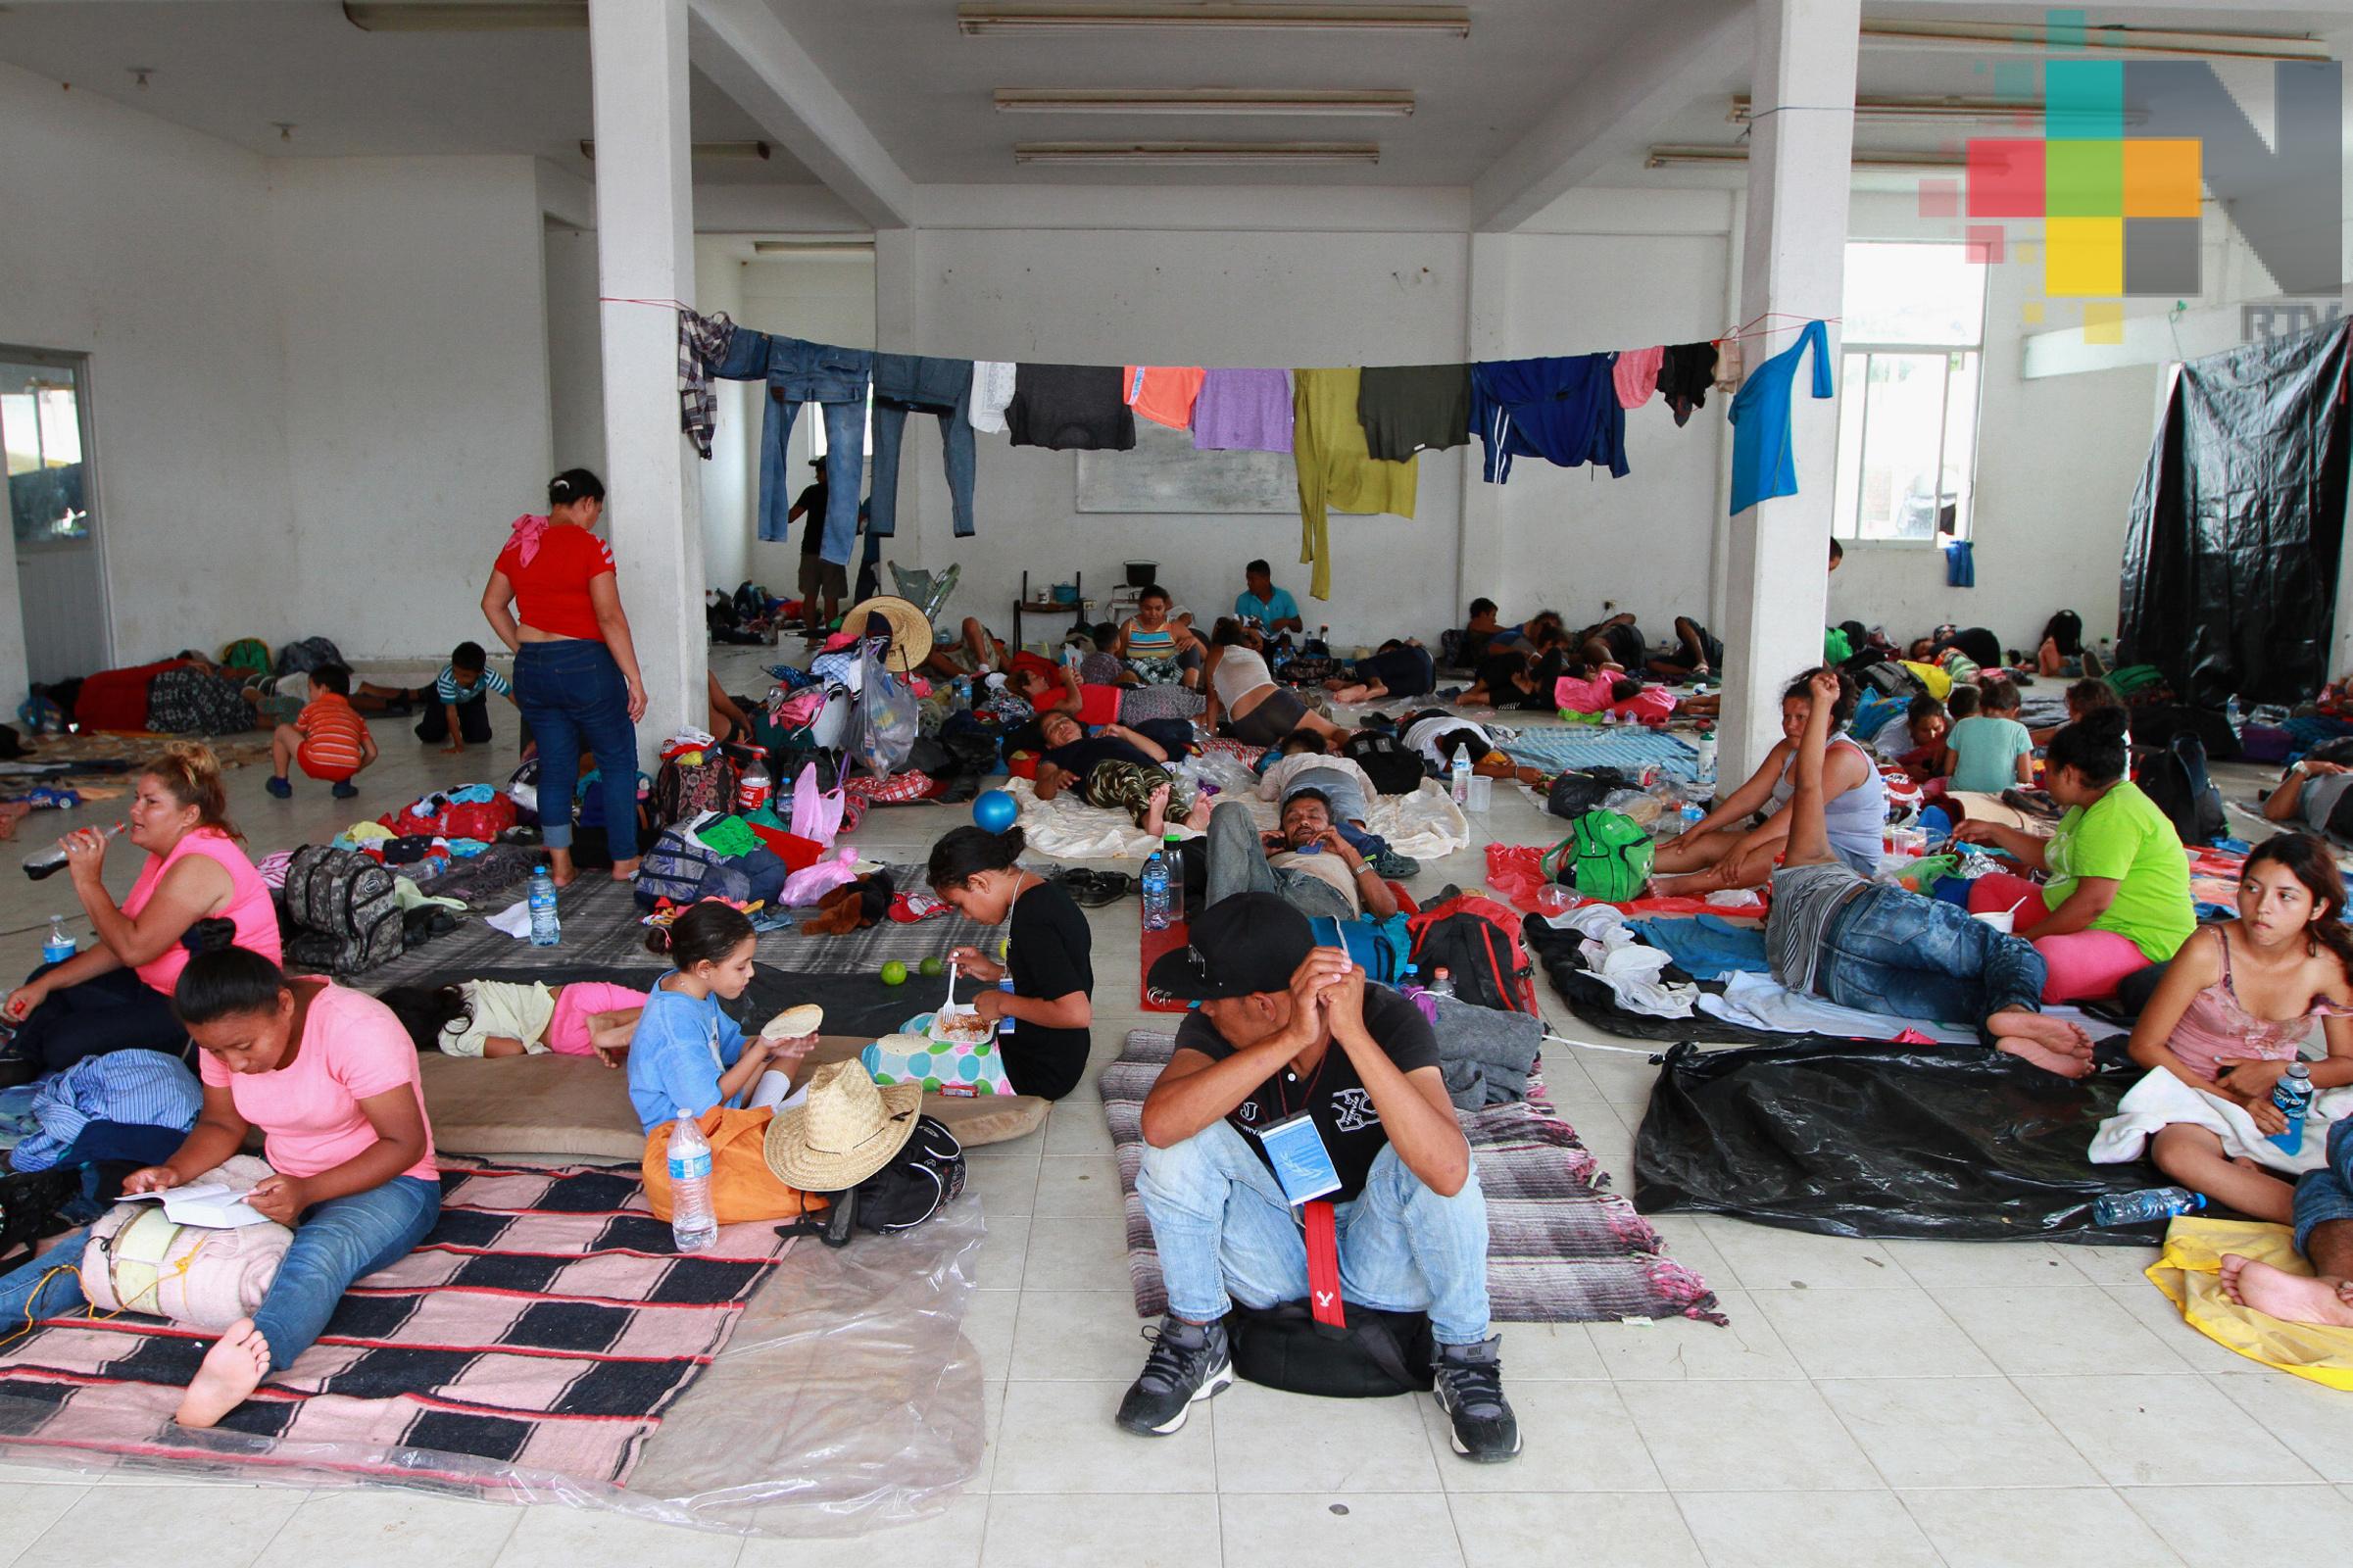 Tramita Comar más de tres mil solicitudes de refugio para migrantes de caravana